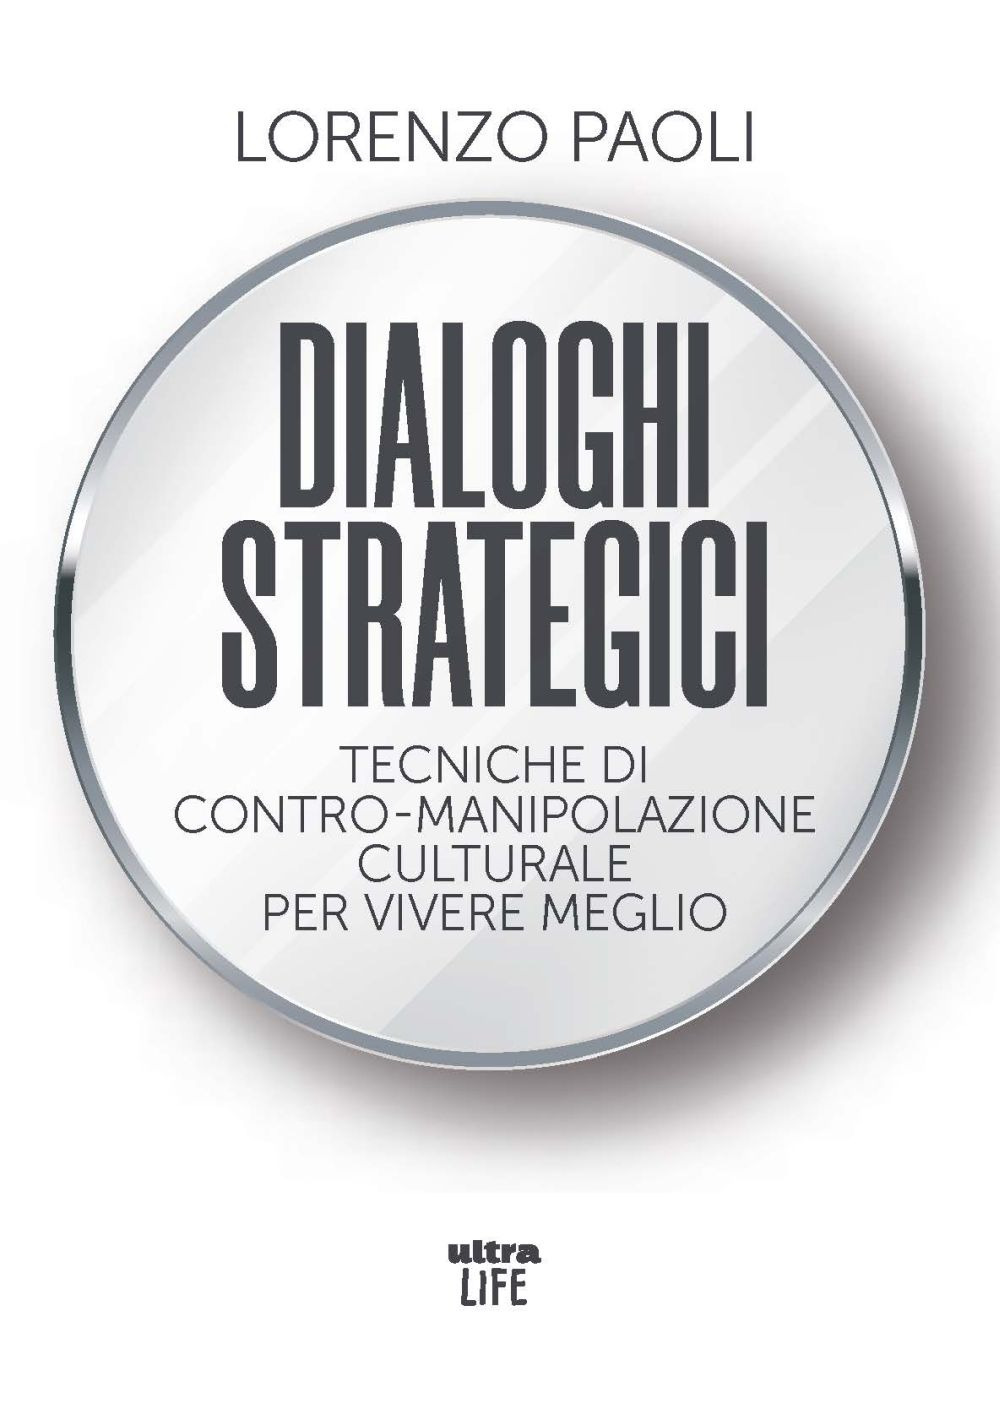 Dialoghi strategici. Tecniche di contro-manipolazione culturale per vivere meglio